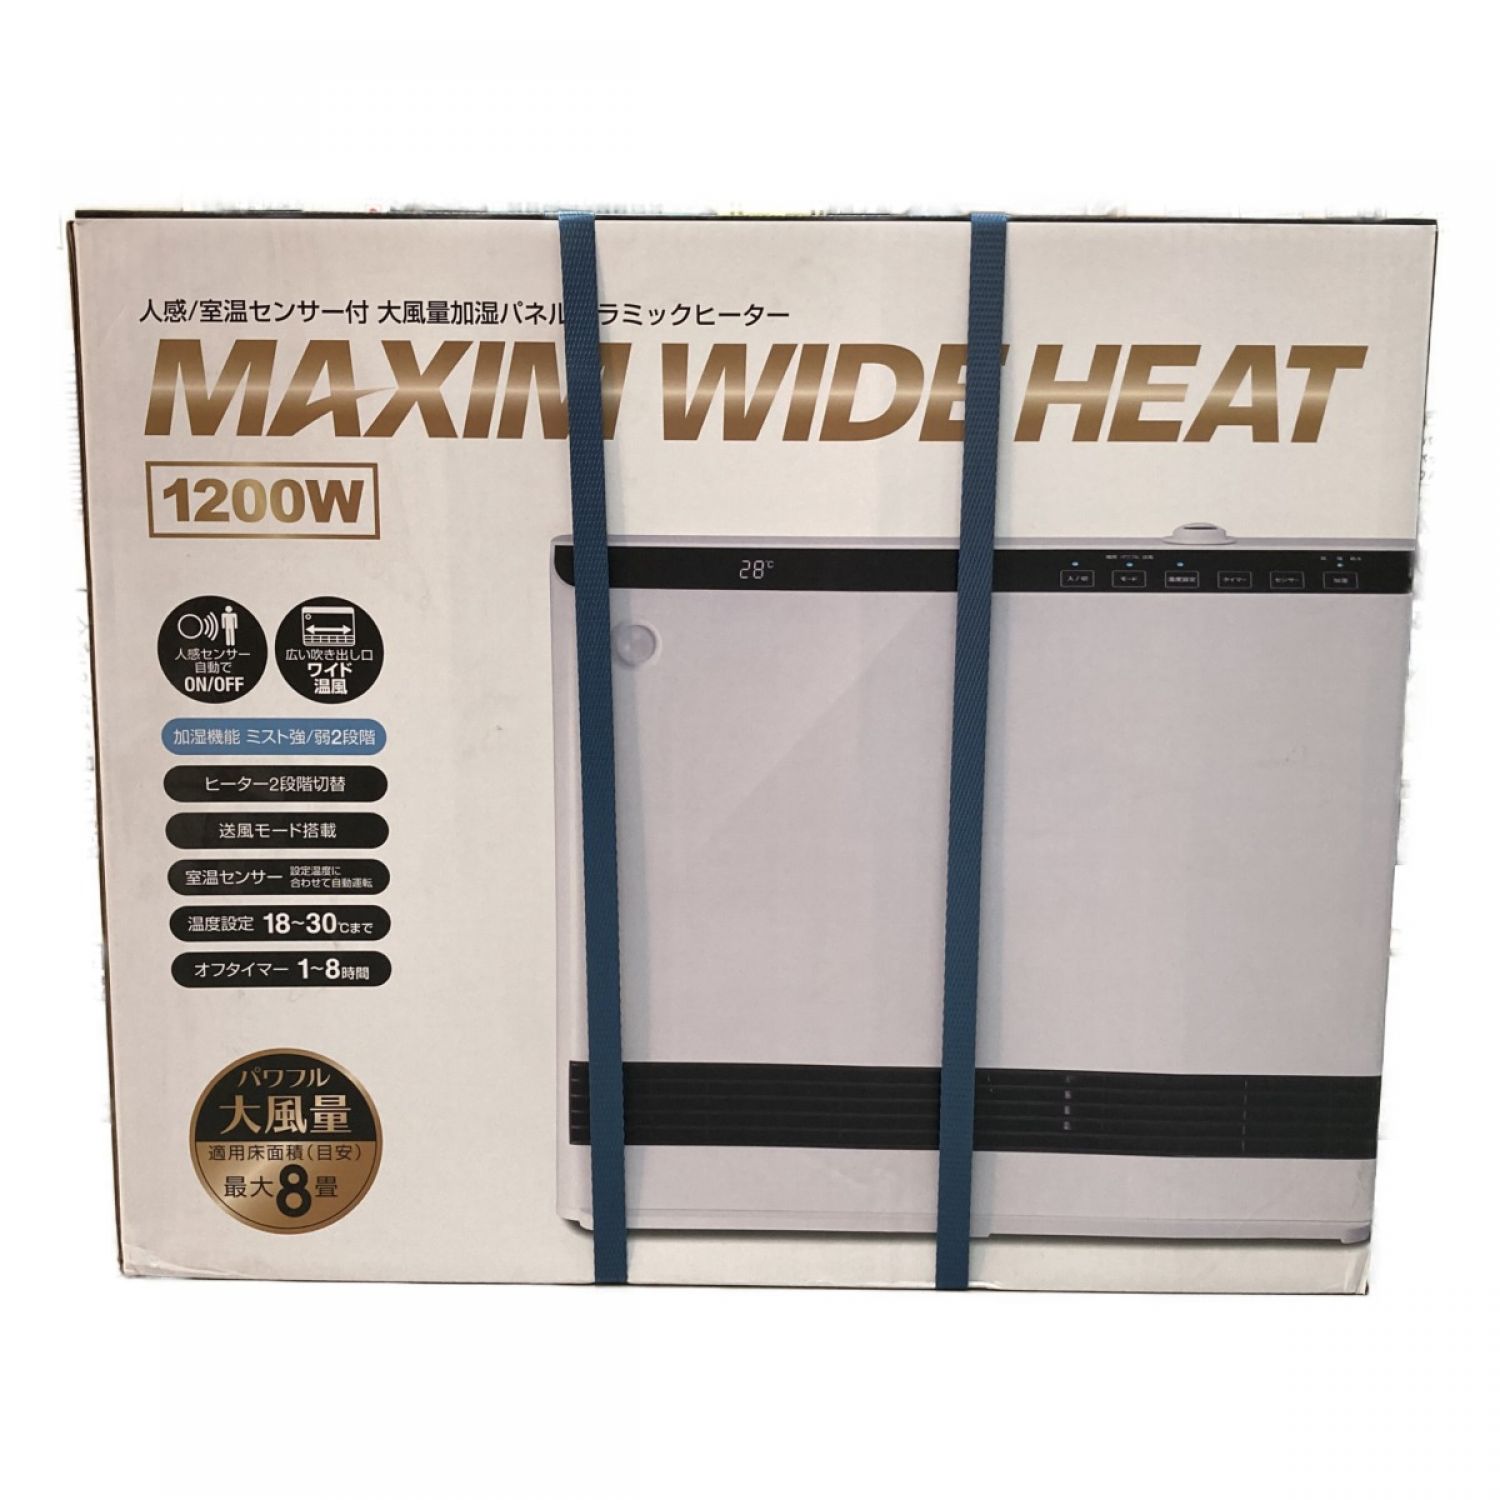 スリーアップ 人感/室温センサー 大風量加湿パネルセラミックヒーター CH-T2261 マキシムワイドヒート 1200W Sランク